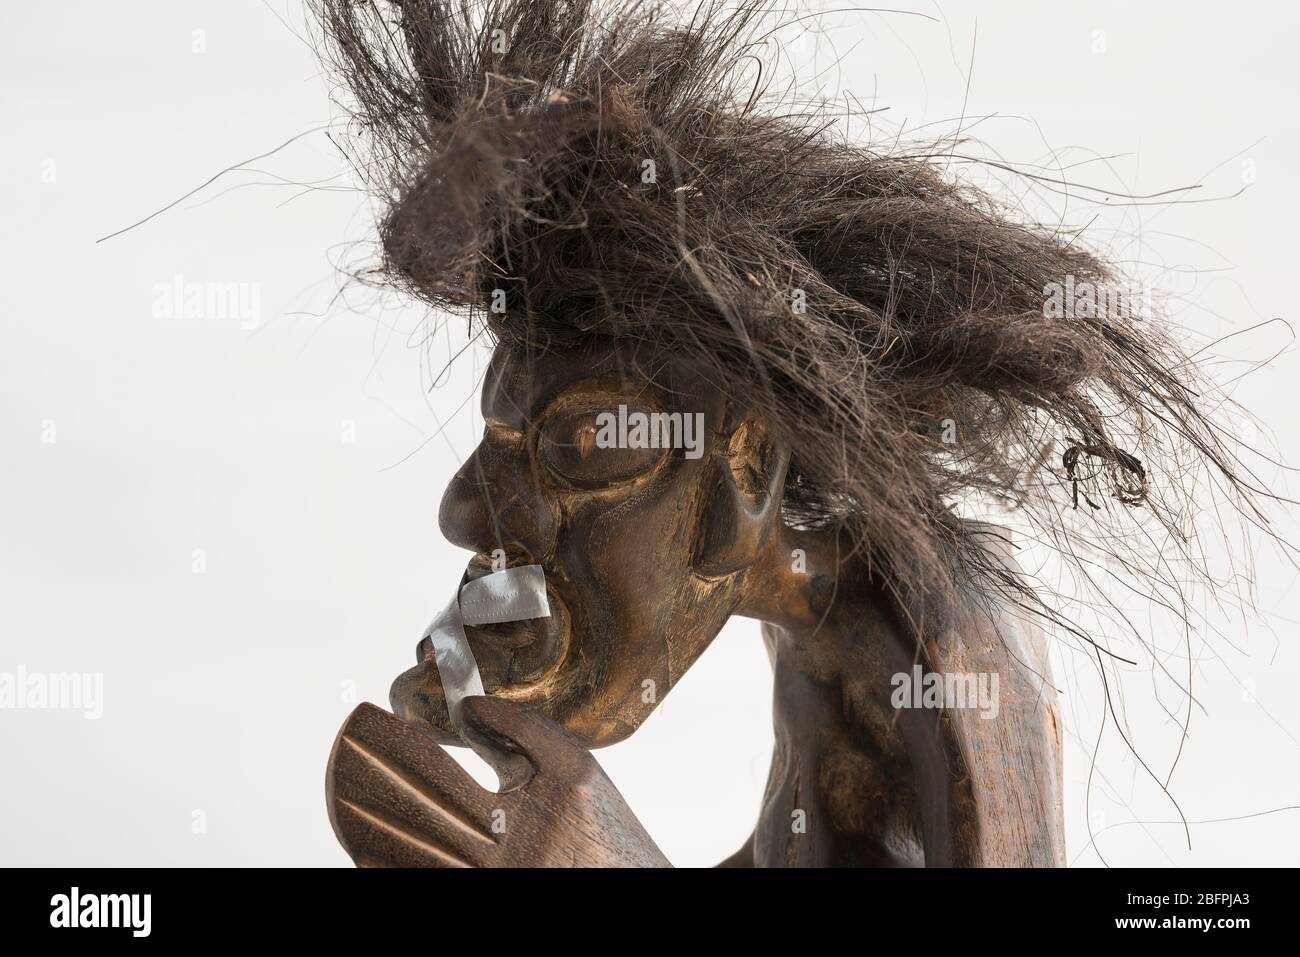 Holz geschnitzte Figur des primitiven Mann trägt Strohrock & lange schwarze zerzauste Haare, aufgeklebt Mund. Konzept; Soziale Unbeweglichkeit, zum Schweigen gebracht, ignoriert. Stockfoto